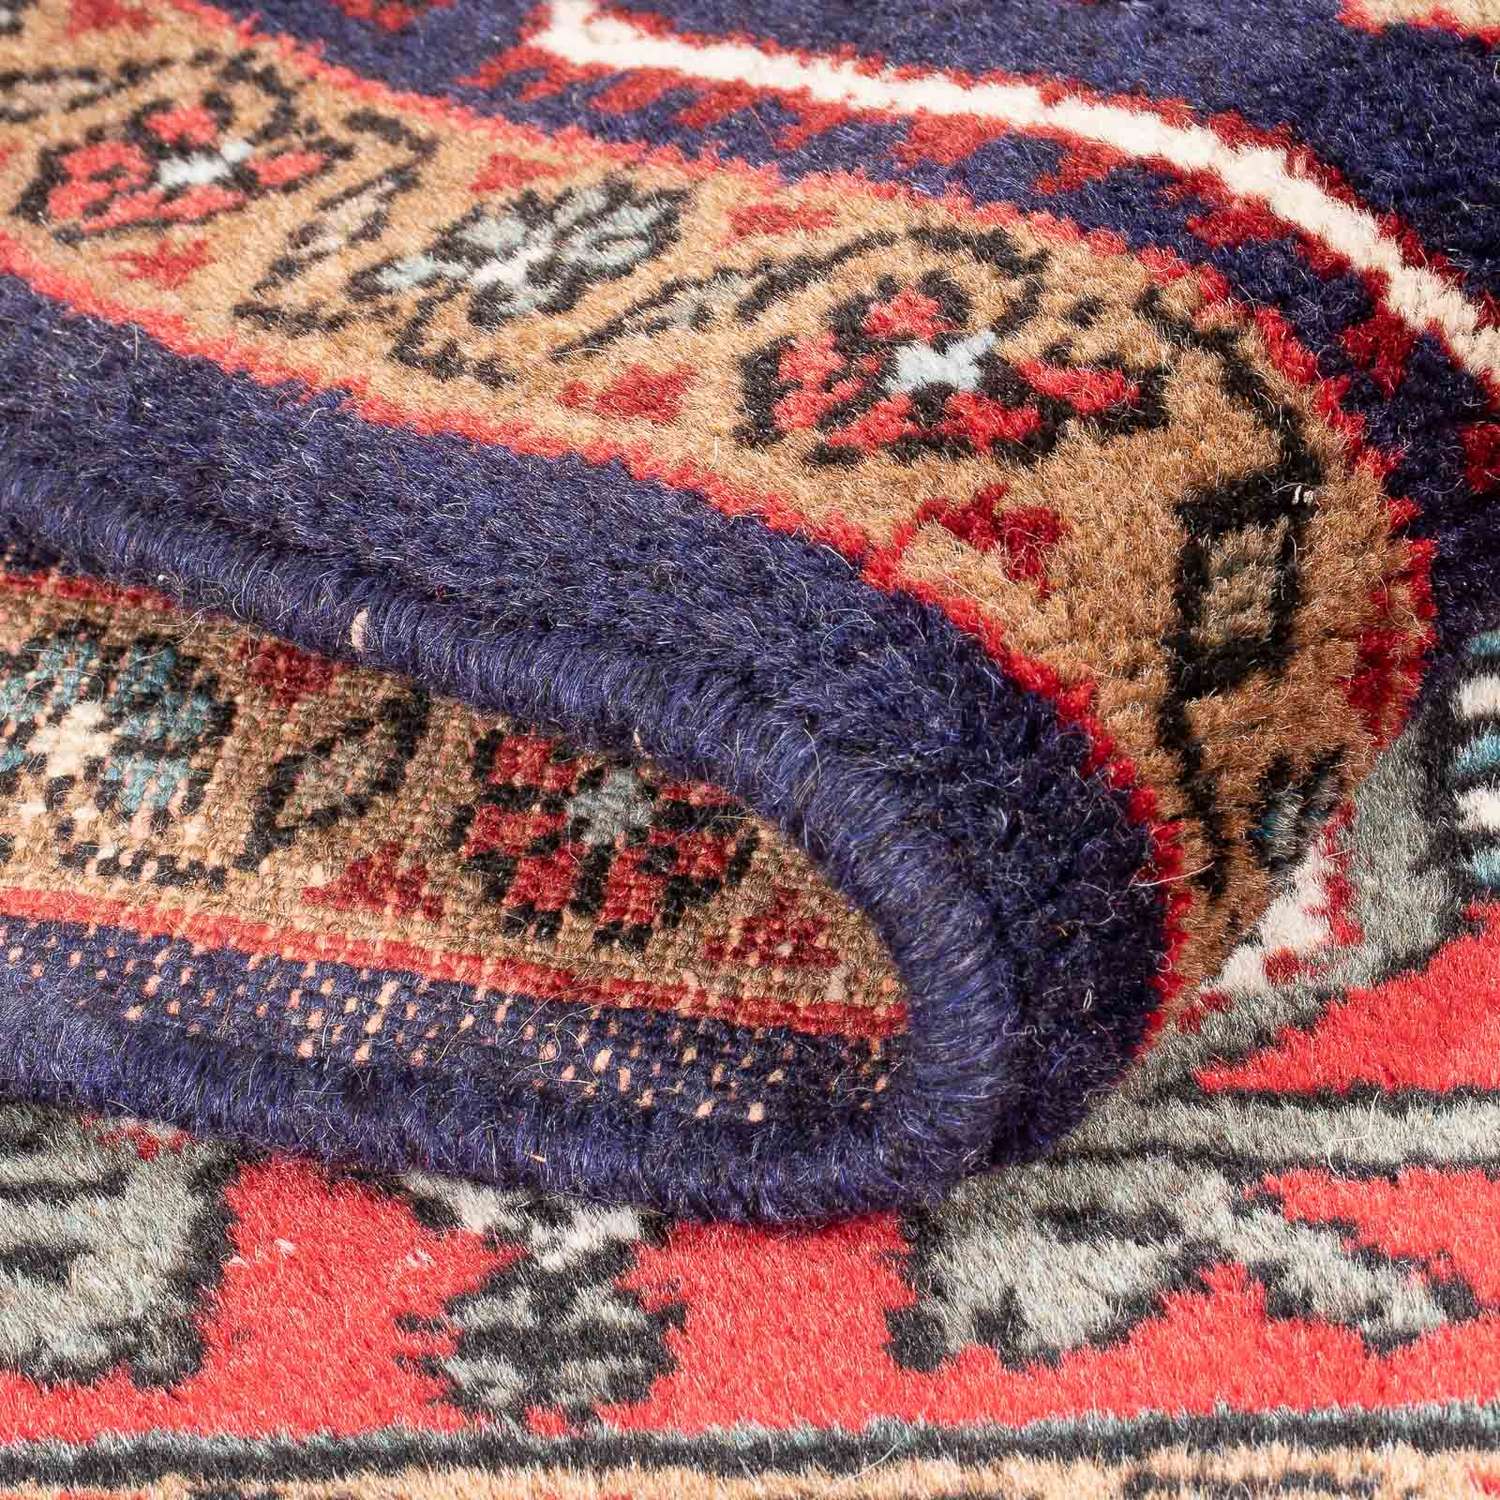 Perski dywan - Nomadyczny - 150 x 107 cm - czerwony